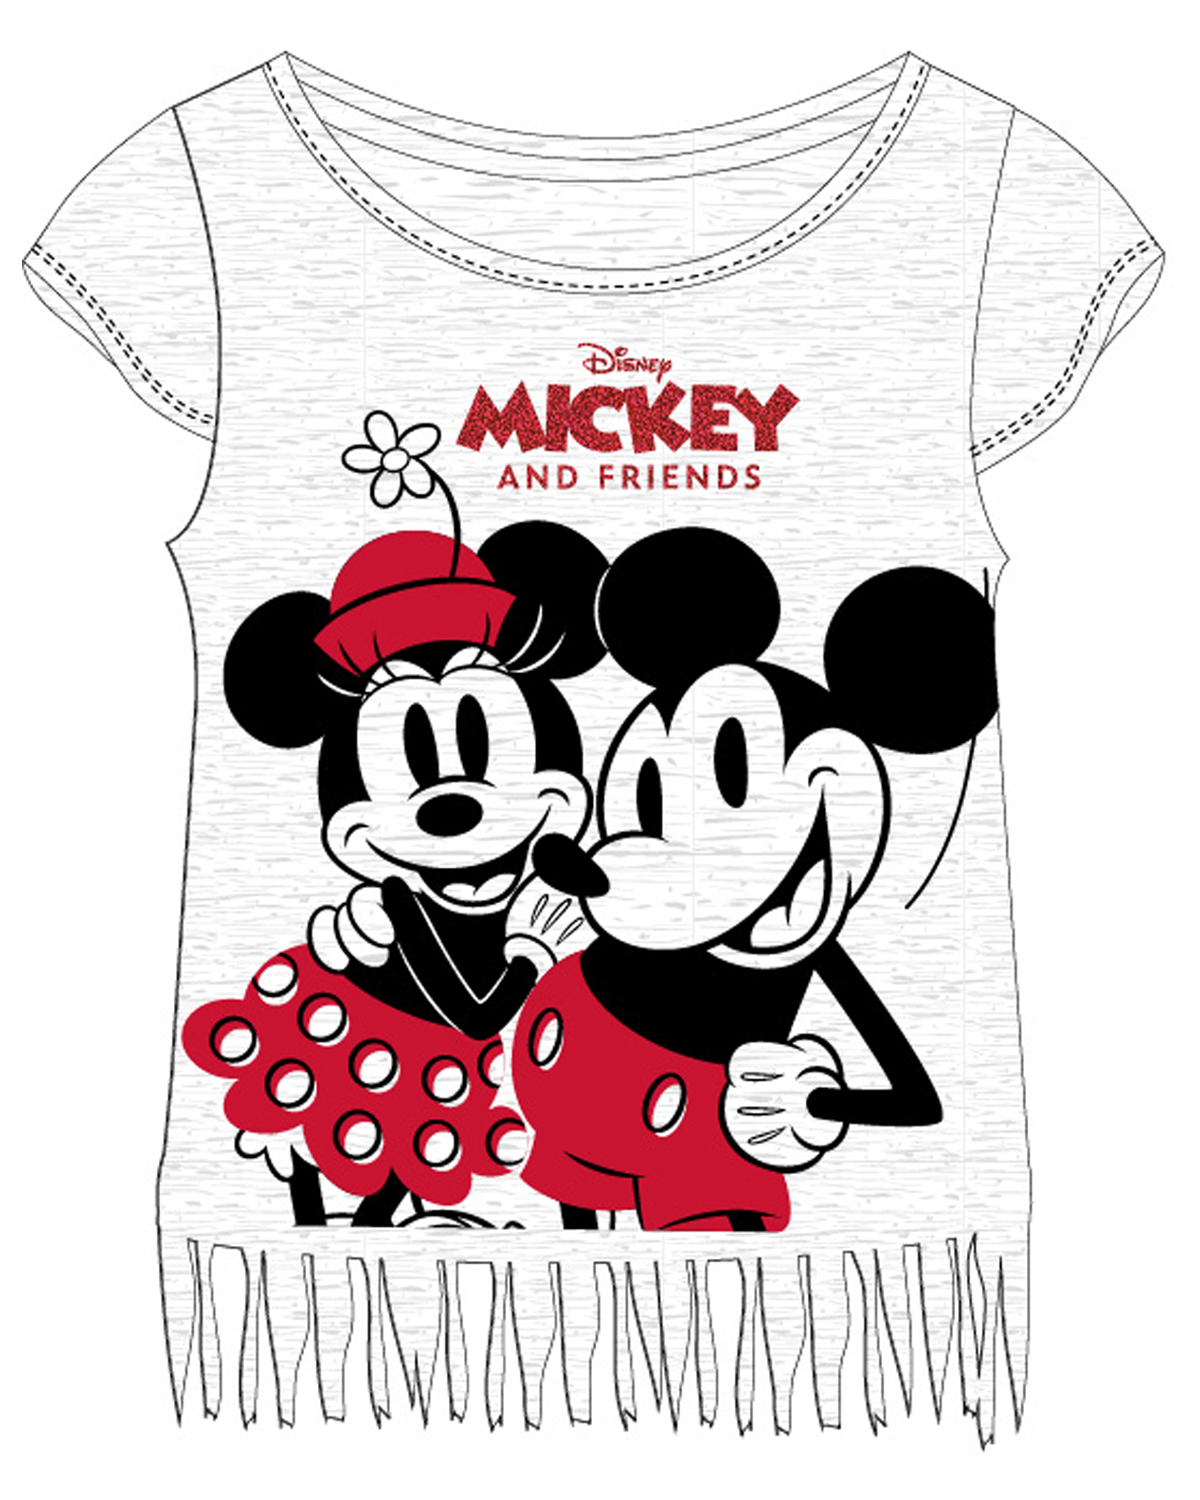 Minnie Mouse - licence Dívčí tričko - Minnie Mouse 52029474, světle šedý melír Barva: Šedá, Velikost: 152